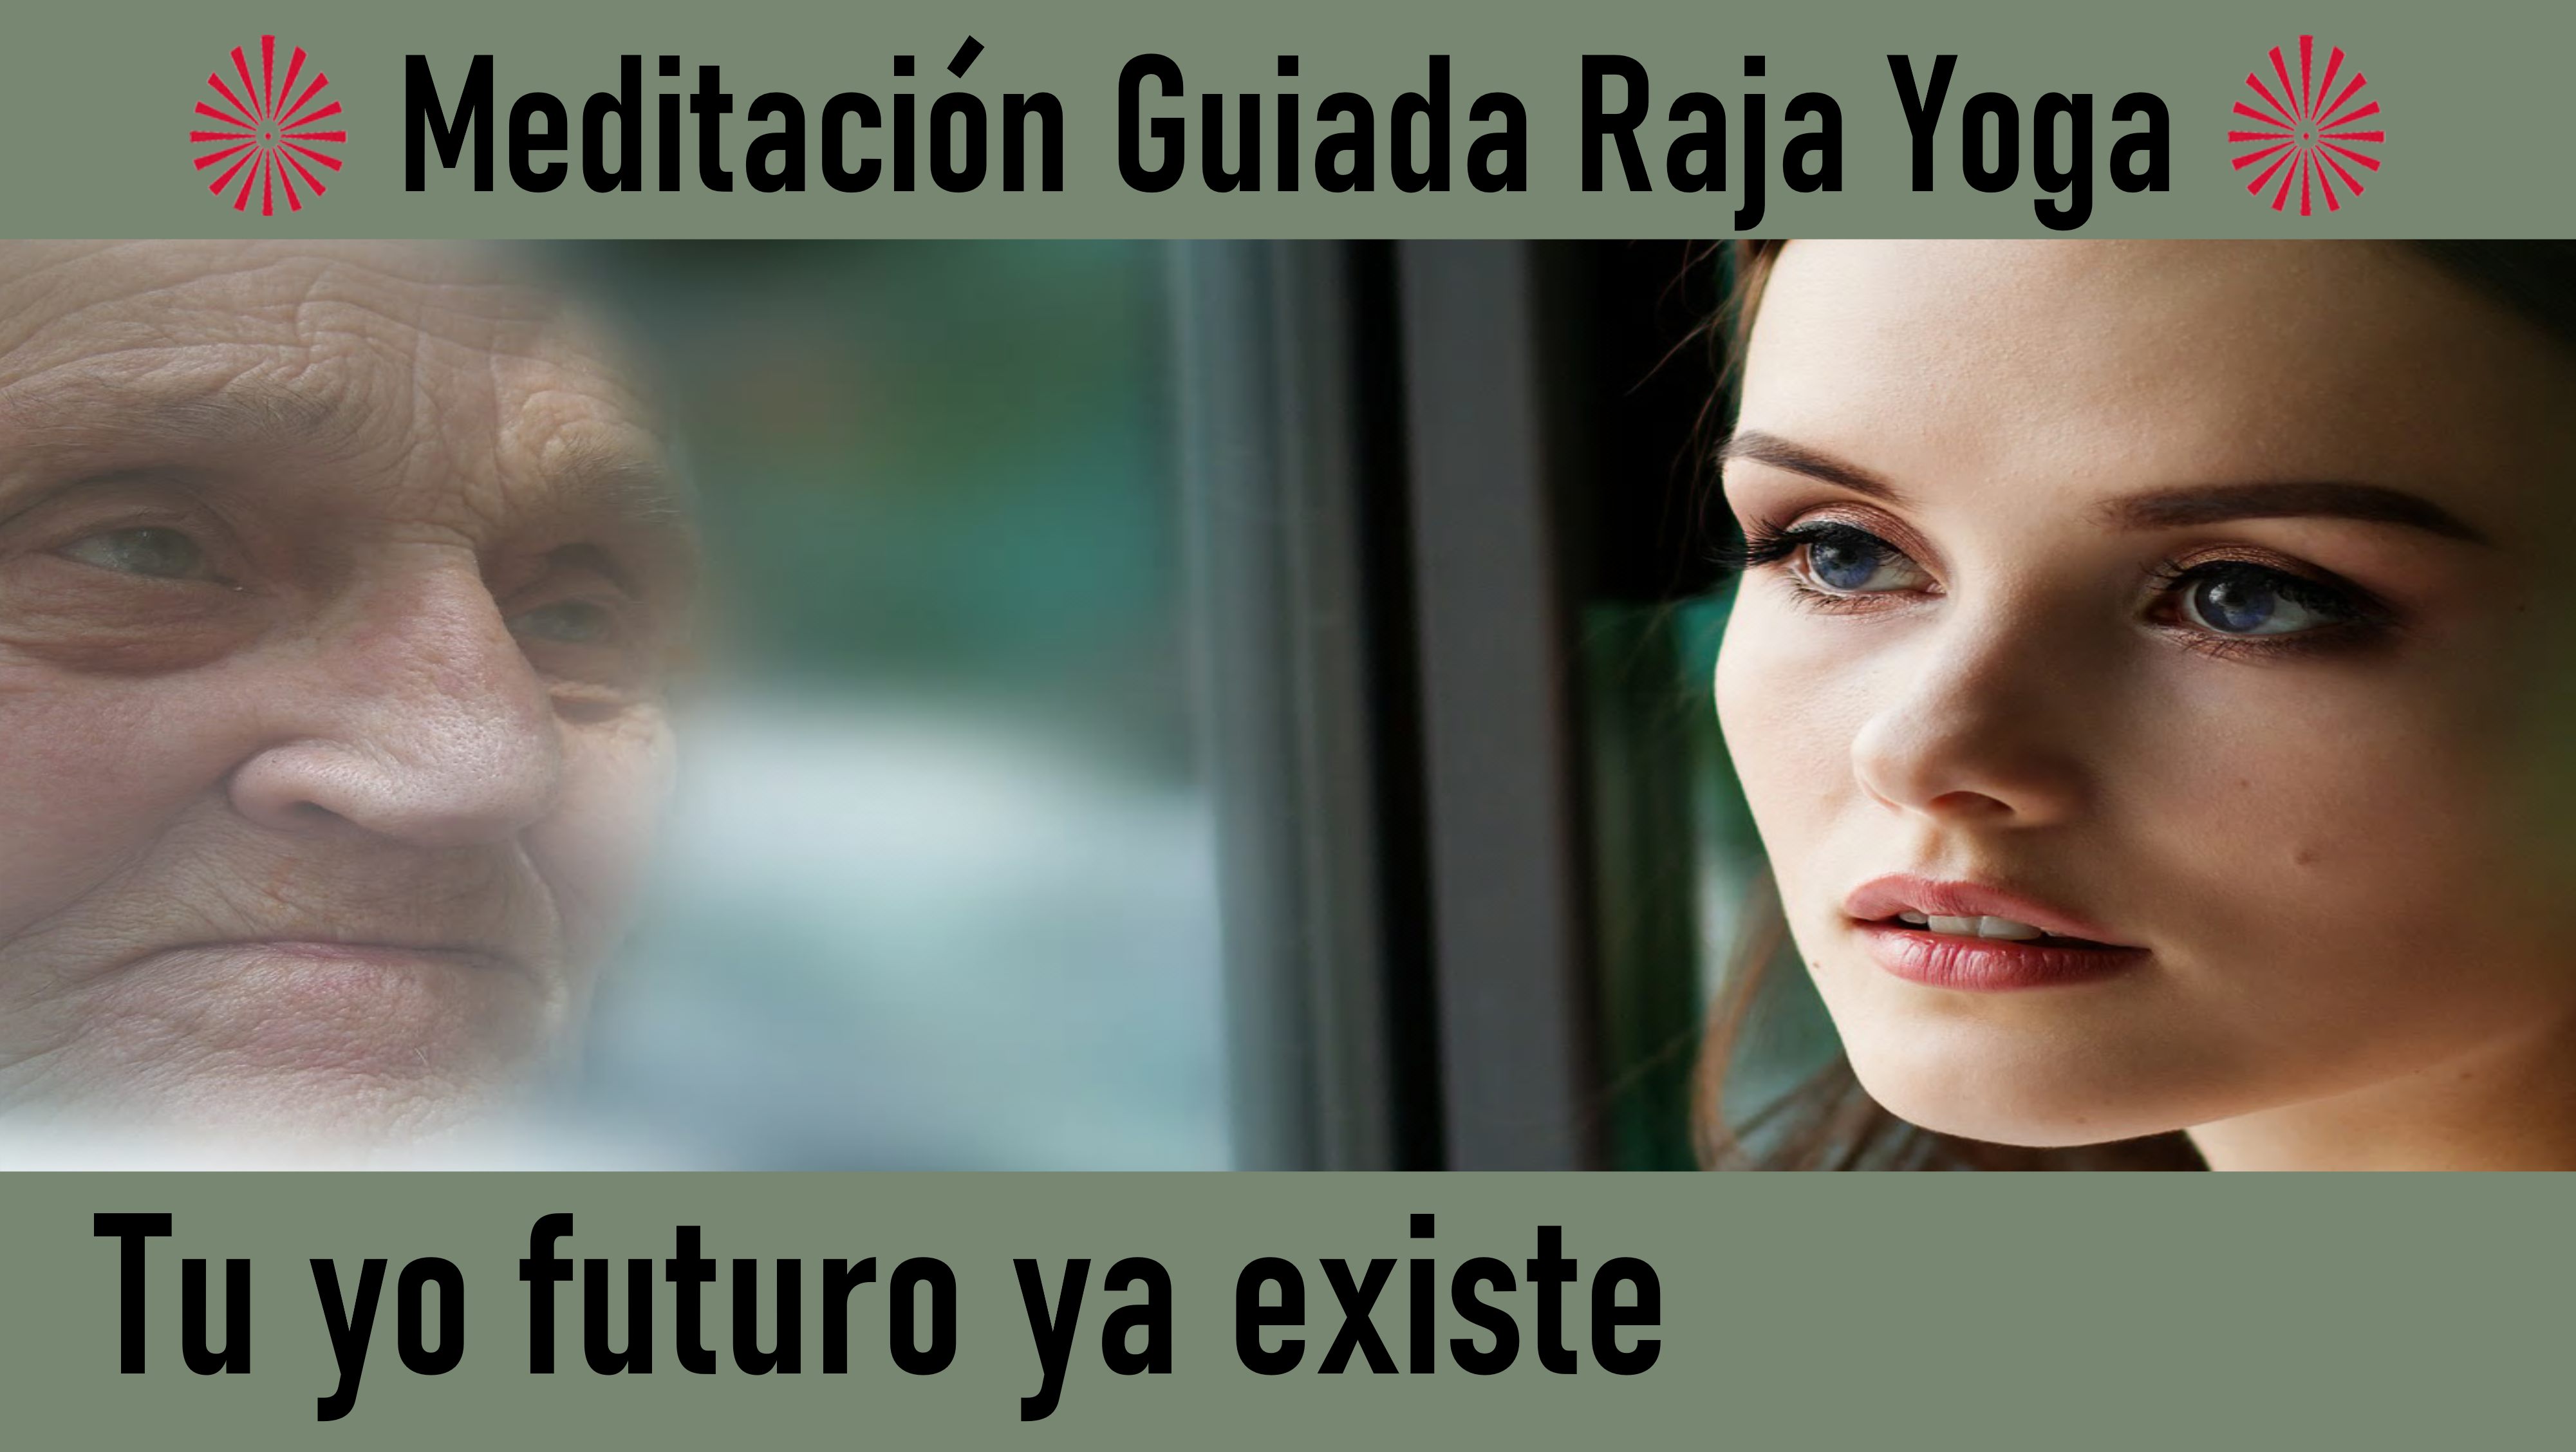 Meditación Raja Yoga: Tu yo futuro ya existe (10 Agosto 2020) On-line desde Madrid